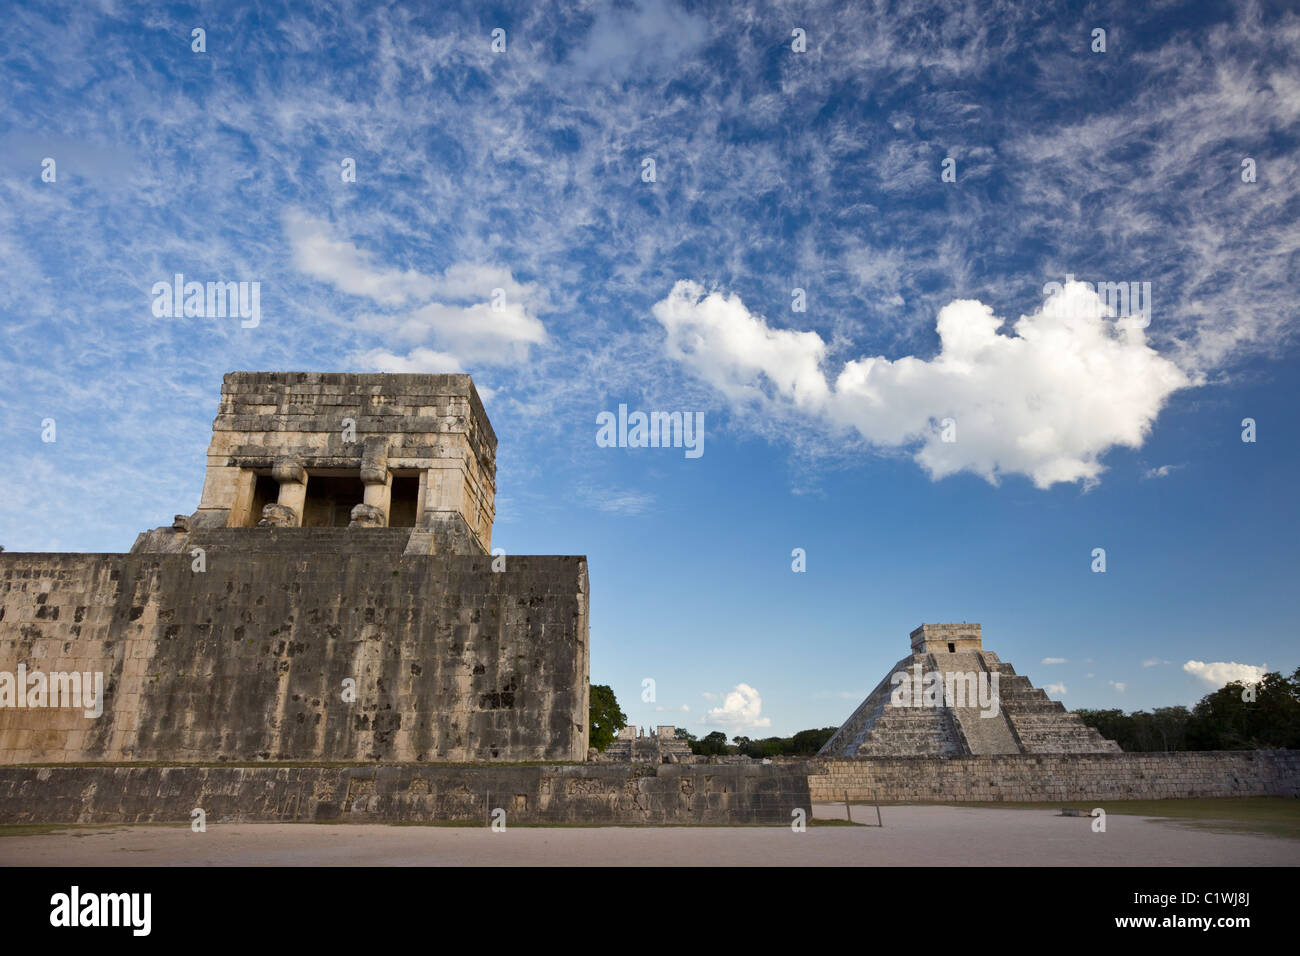 Ball à Chichen Itza avec la pyramide de Kukulkan ou "El Castillo" dans l'arrière-plan, péninsule du Yucatan, Mexco. Banque D'Images